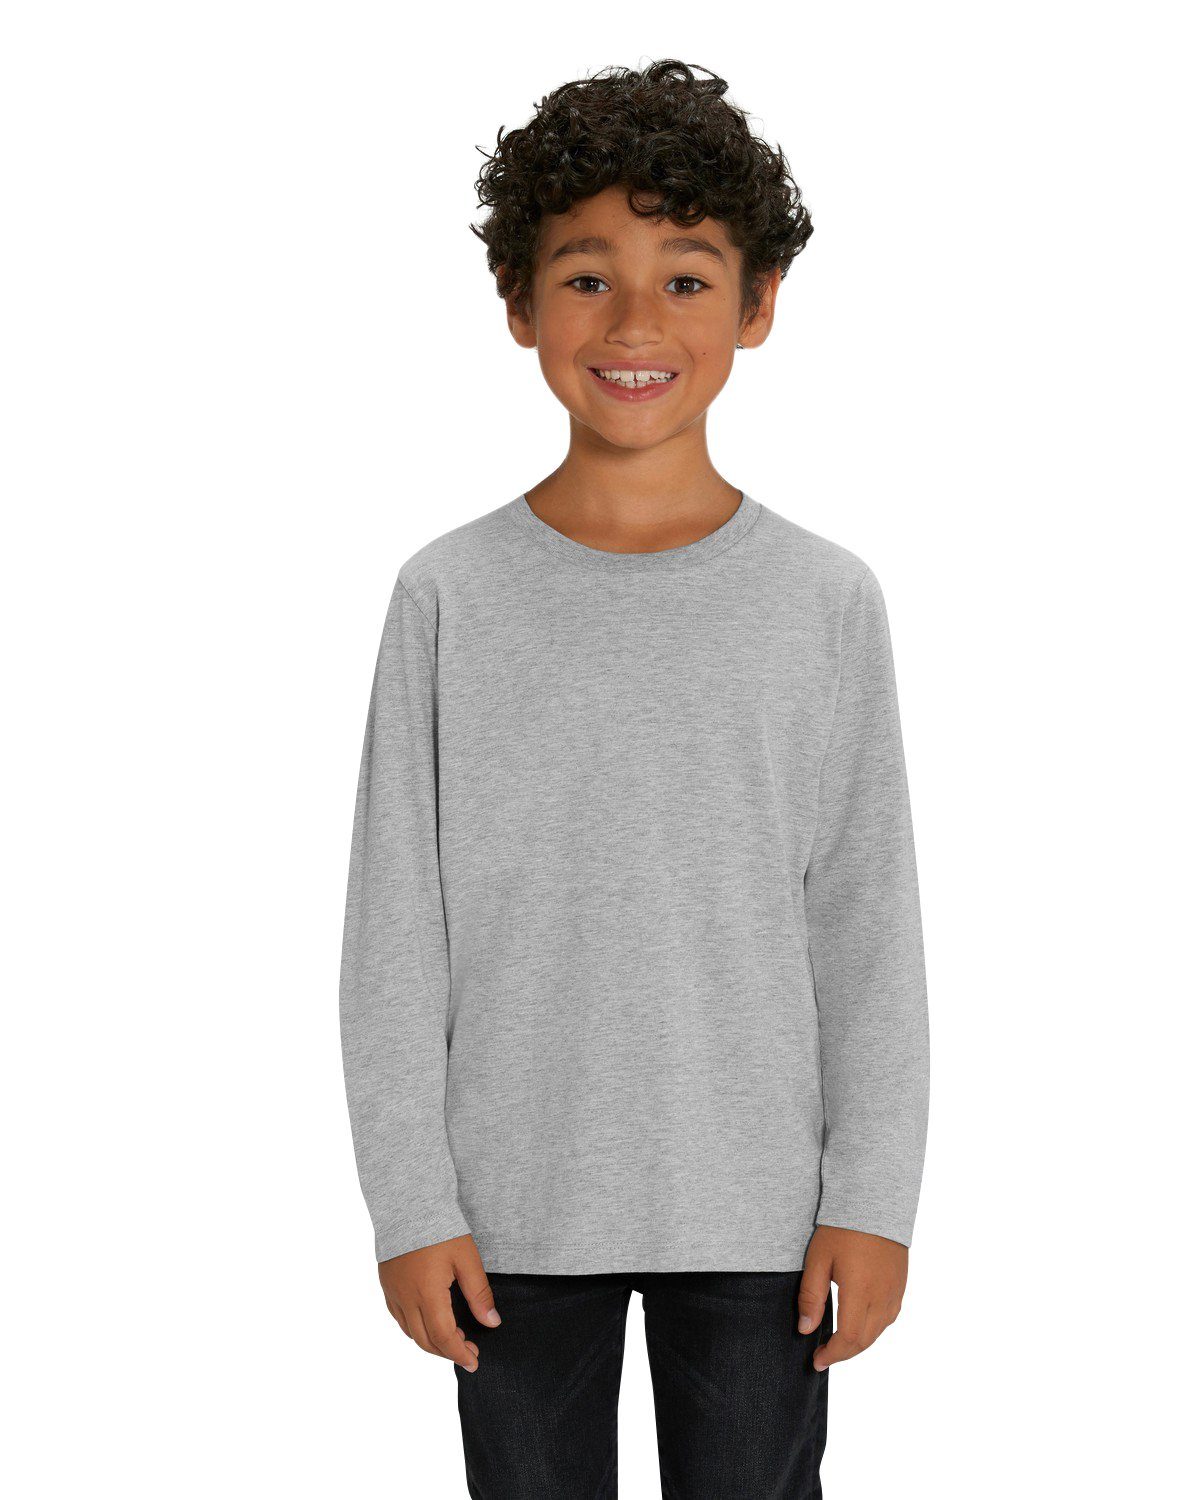 Hilltop T-Shirt »Hochwertiges Kinder Langarmshirt /100% Bio-Baumwolle für  Mädchen und Jungen. Eignet sich hervorragend zum bedrucken. (z.B.: mit  Transfer-Folien/Textilfolien)« online kaufen | OTTO